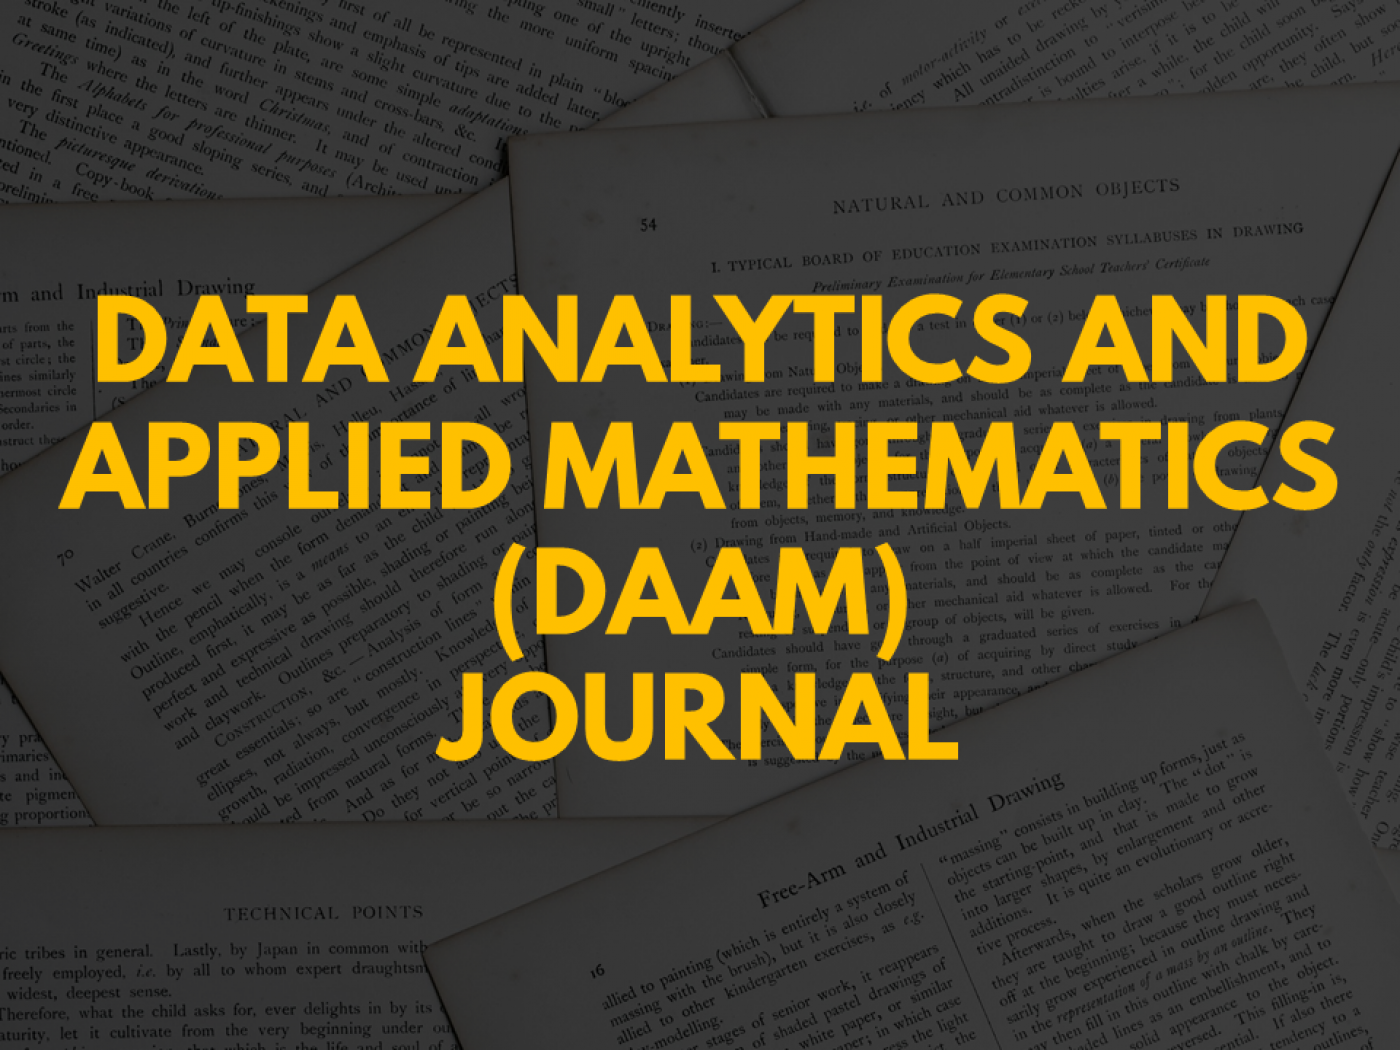 Journal of Data Analytics & Applied Mathematics (DAAM) 1st Issue